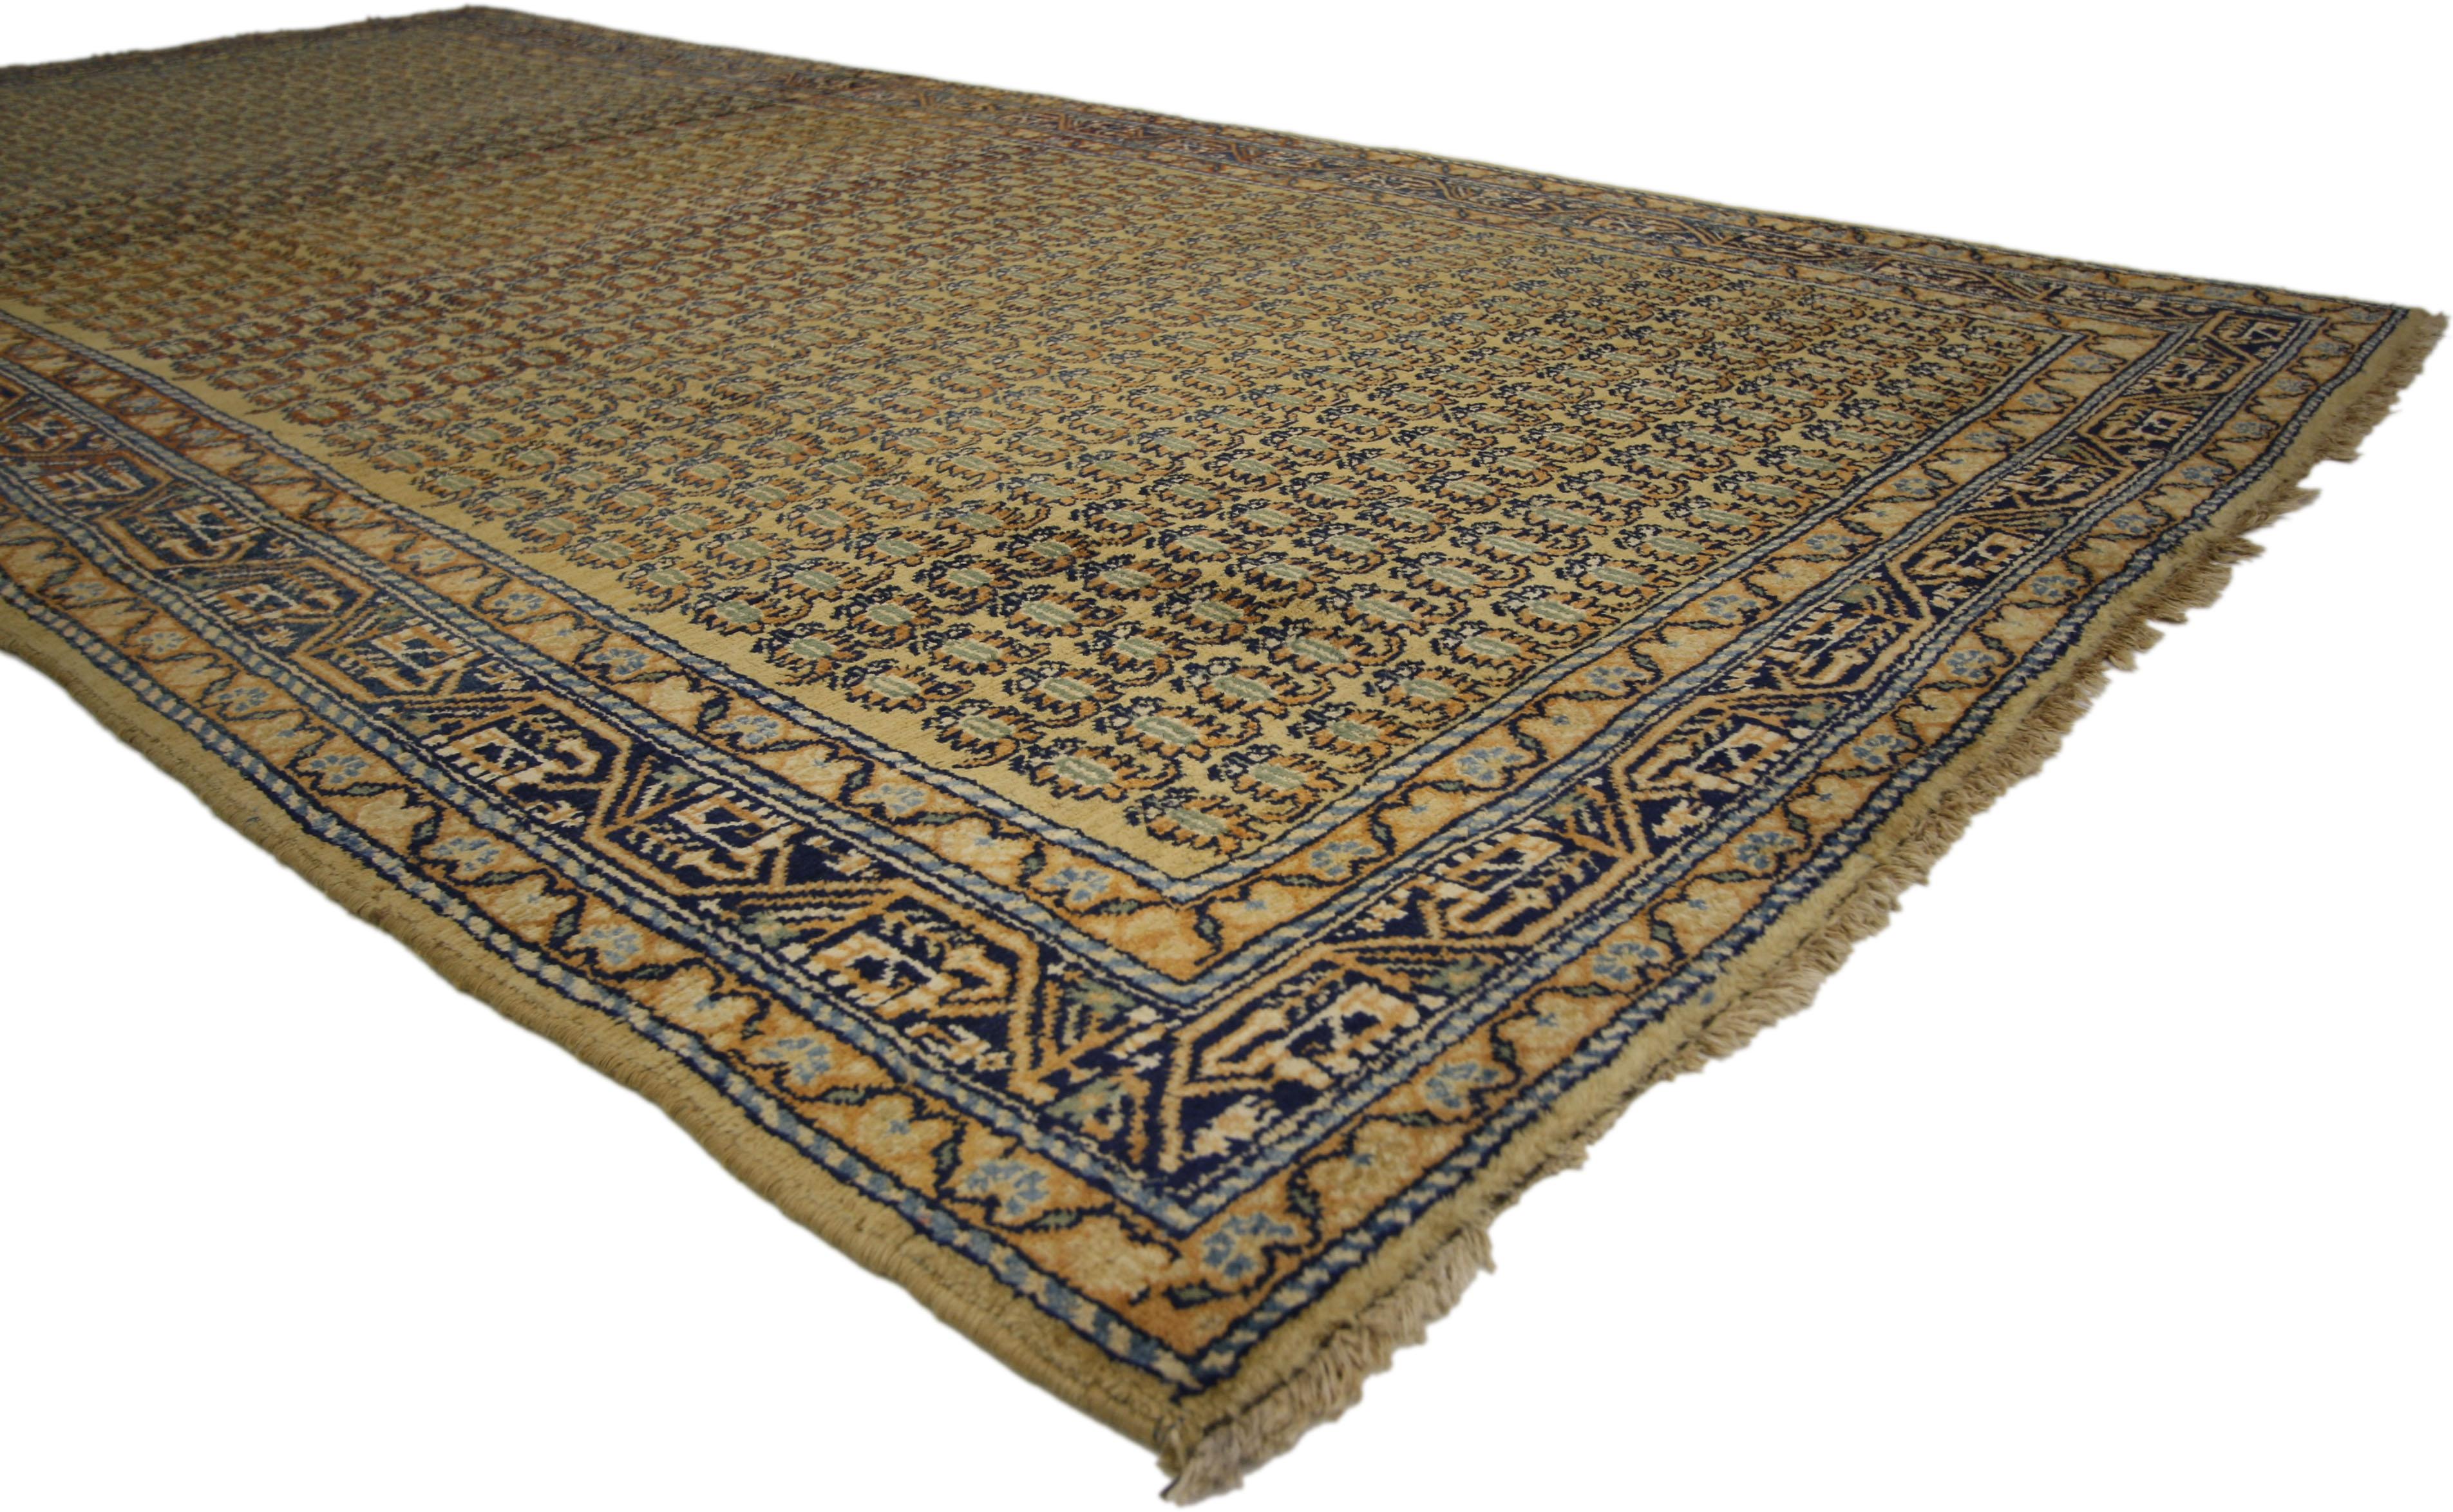 72614 Antique Persian Saraband Runner with Mir Boteh Design, Wide Hallway Runner 04'09 x 09'09. Le tapis Saraband en laine nouée à la main présente des colonnes symétriques de motifs stylisés Mir boteh. Le boteh ressemble à une graine germée et est